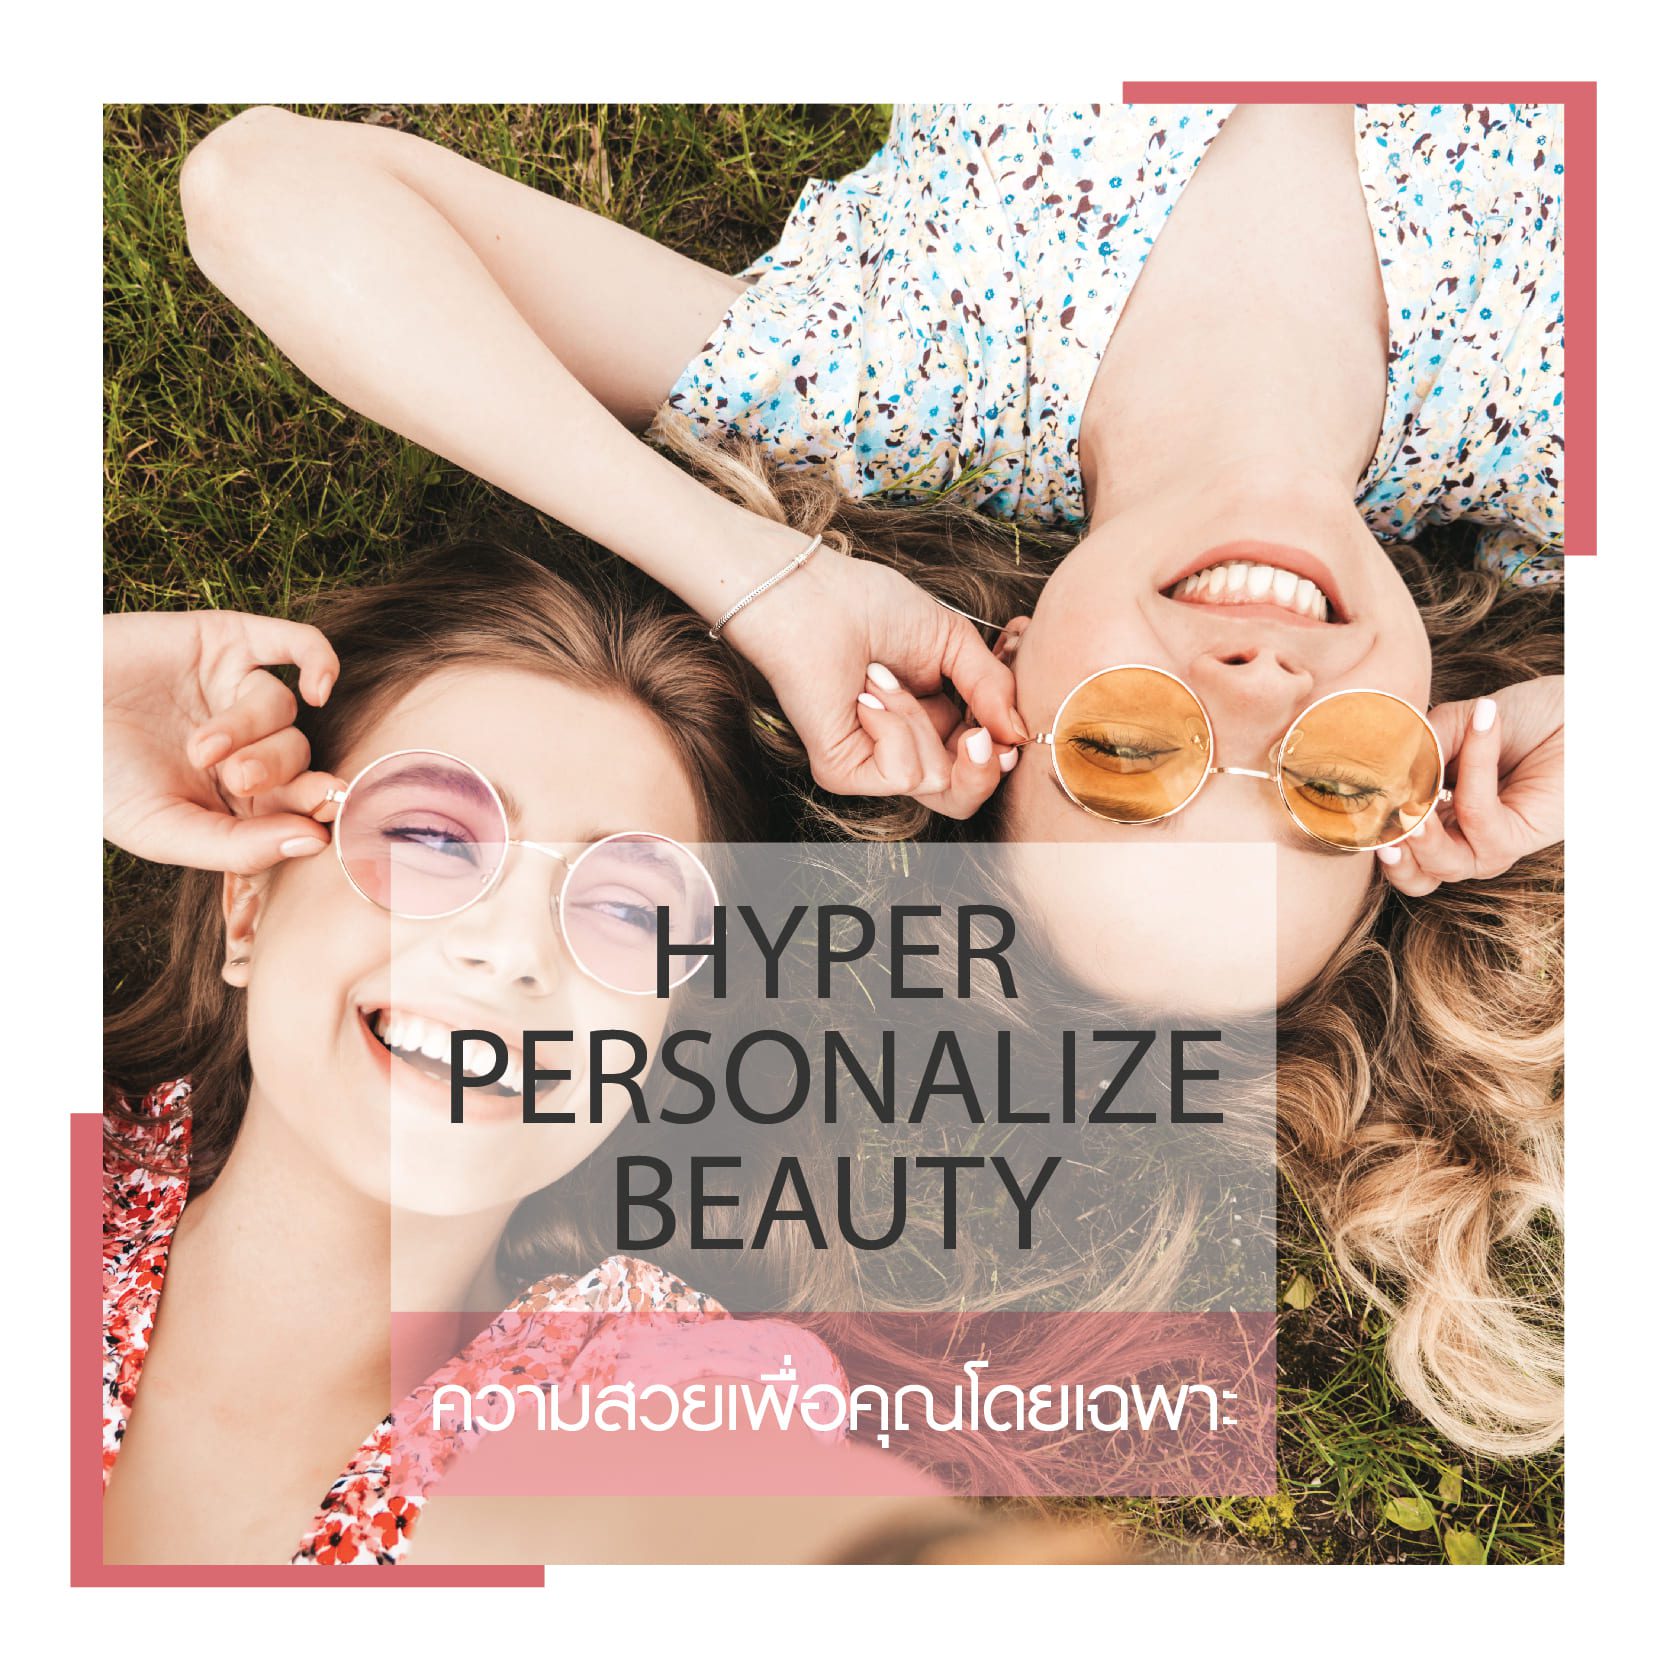 Hyper Personalize Beauty - beauty trend 2021